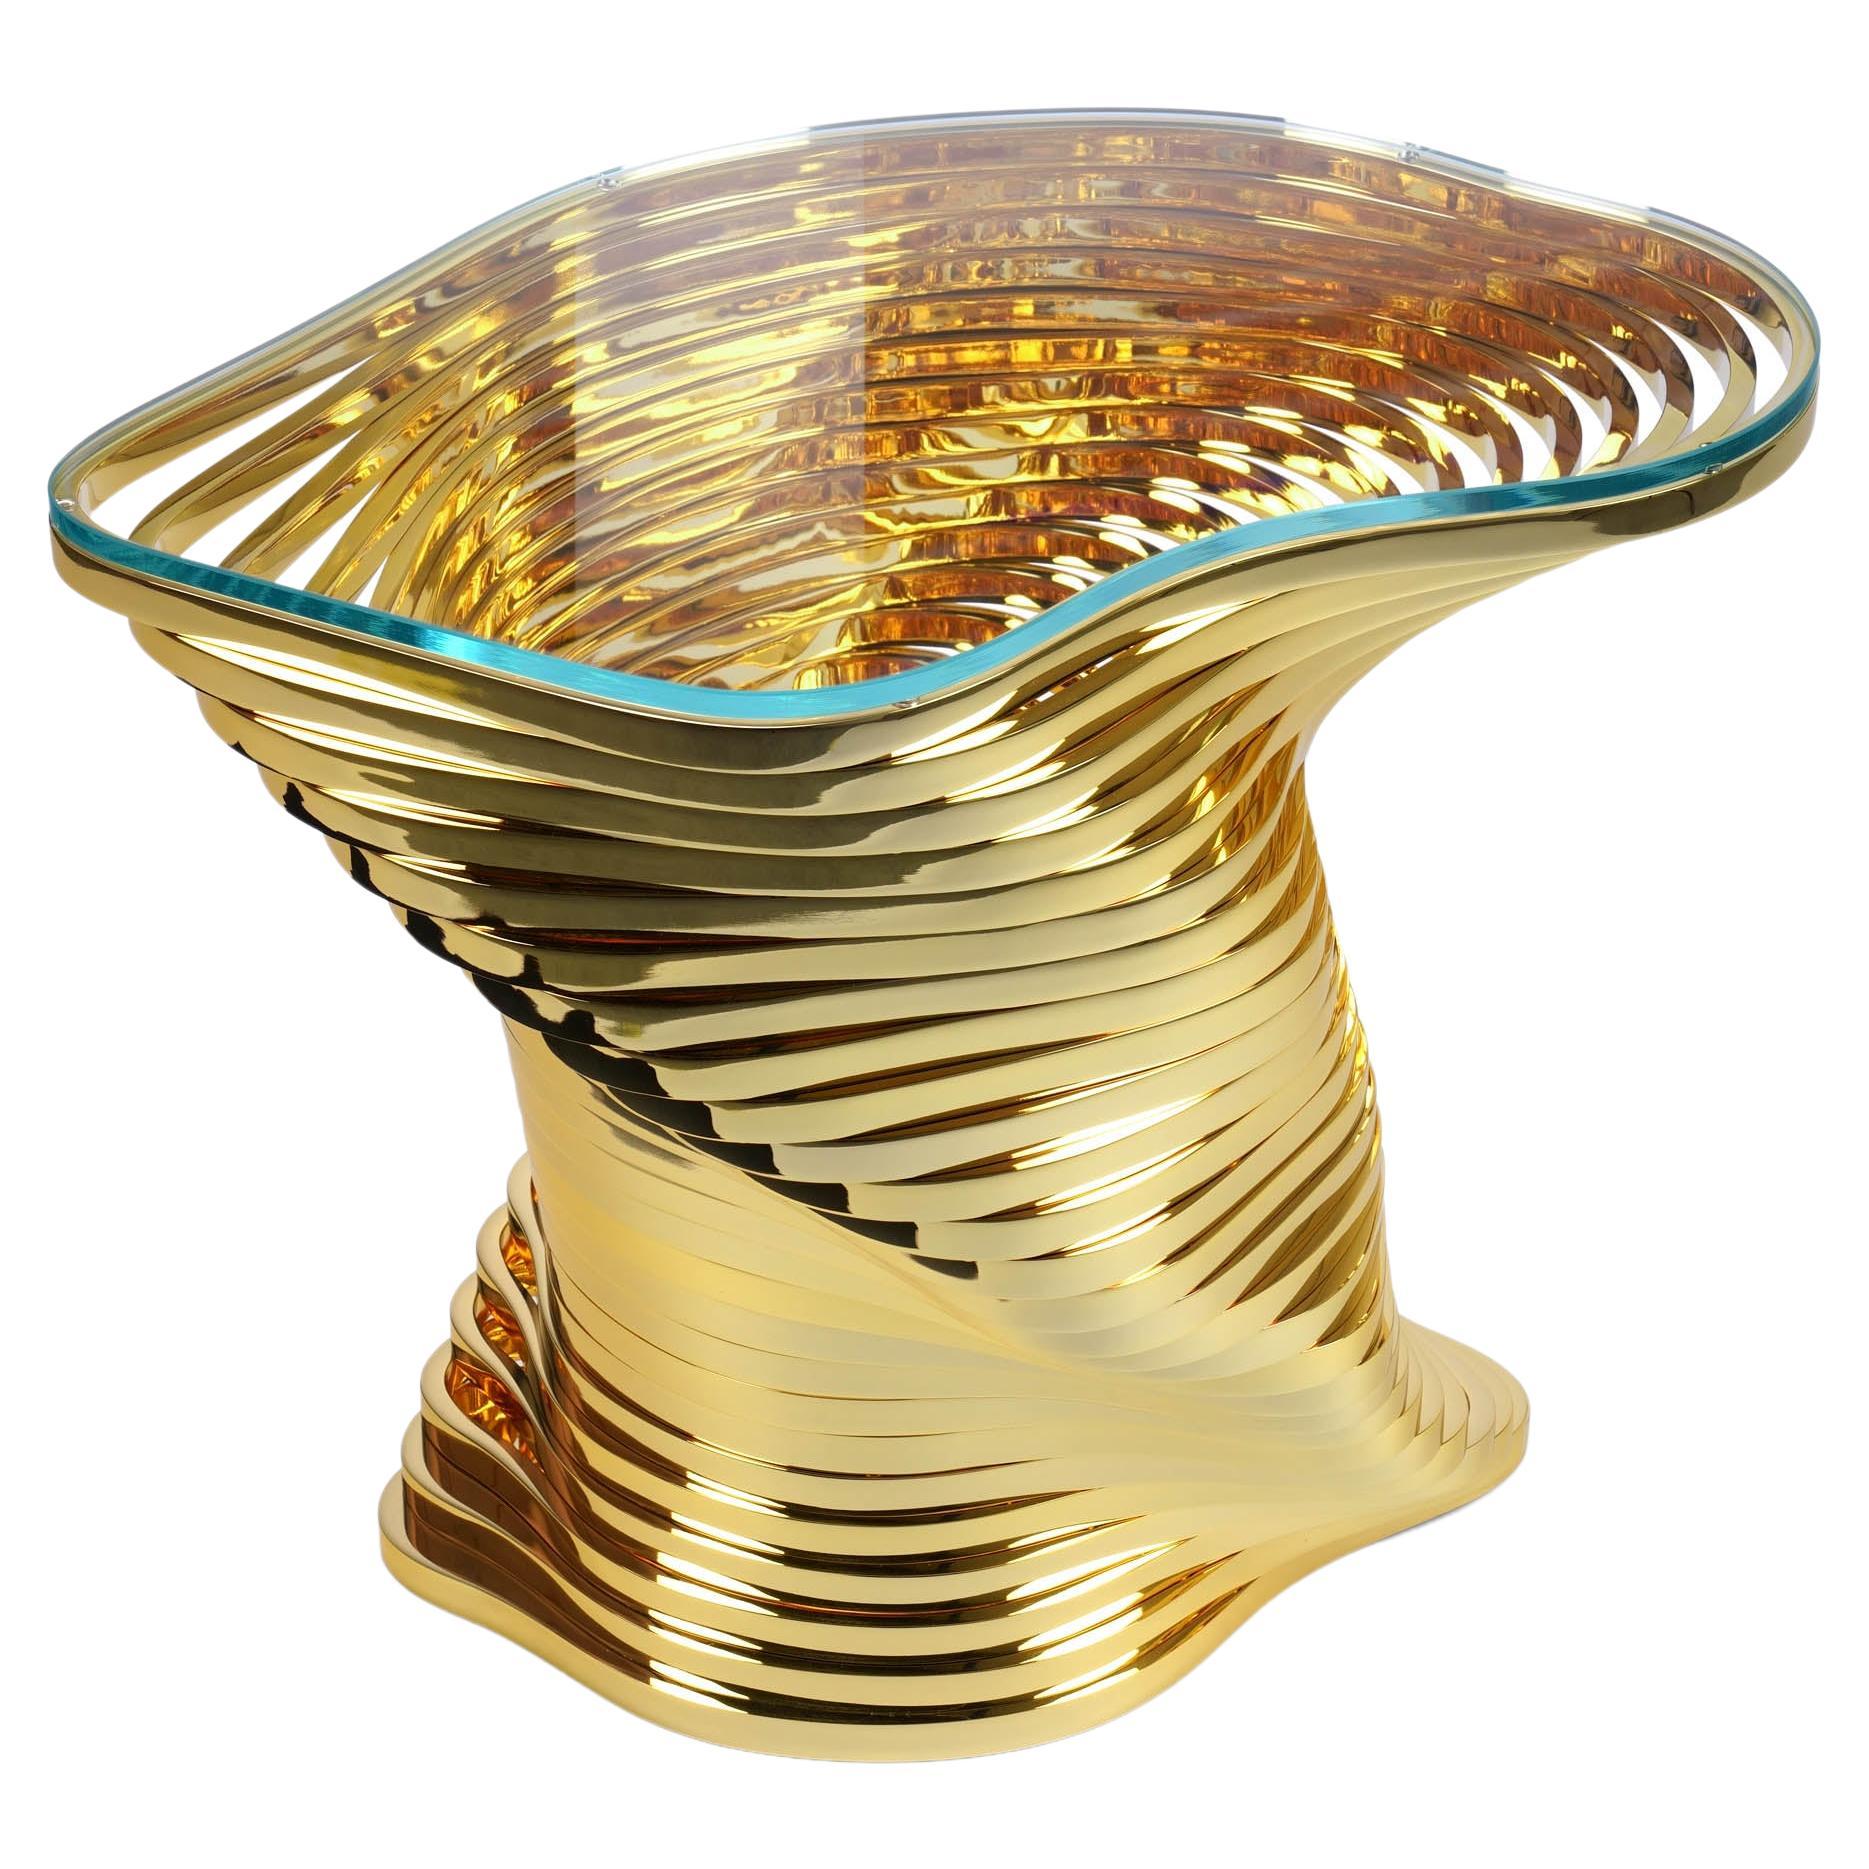 Der skulpturale Beistelltisch Vertigo Gold besteht aus 28 Edelstahlelementen, die sorgfältig auf Hochglanz poliert und einzeln mit wertvollem 24-karätigem Gold überzogen wurden. Ein wahres Juwel, das die Kraft hat, Sie zwischen den Reflexionen und